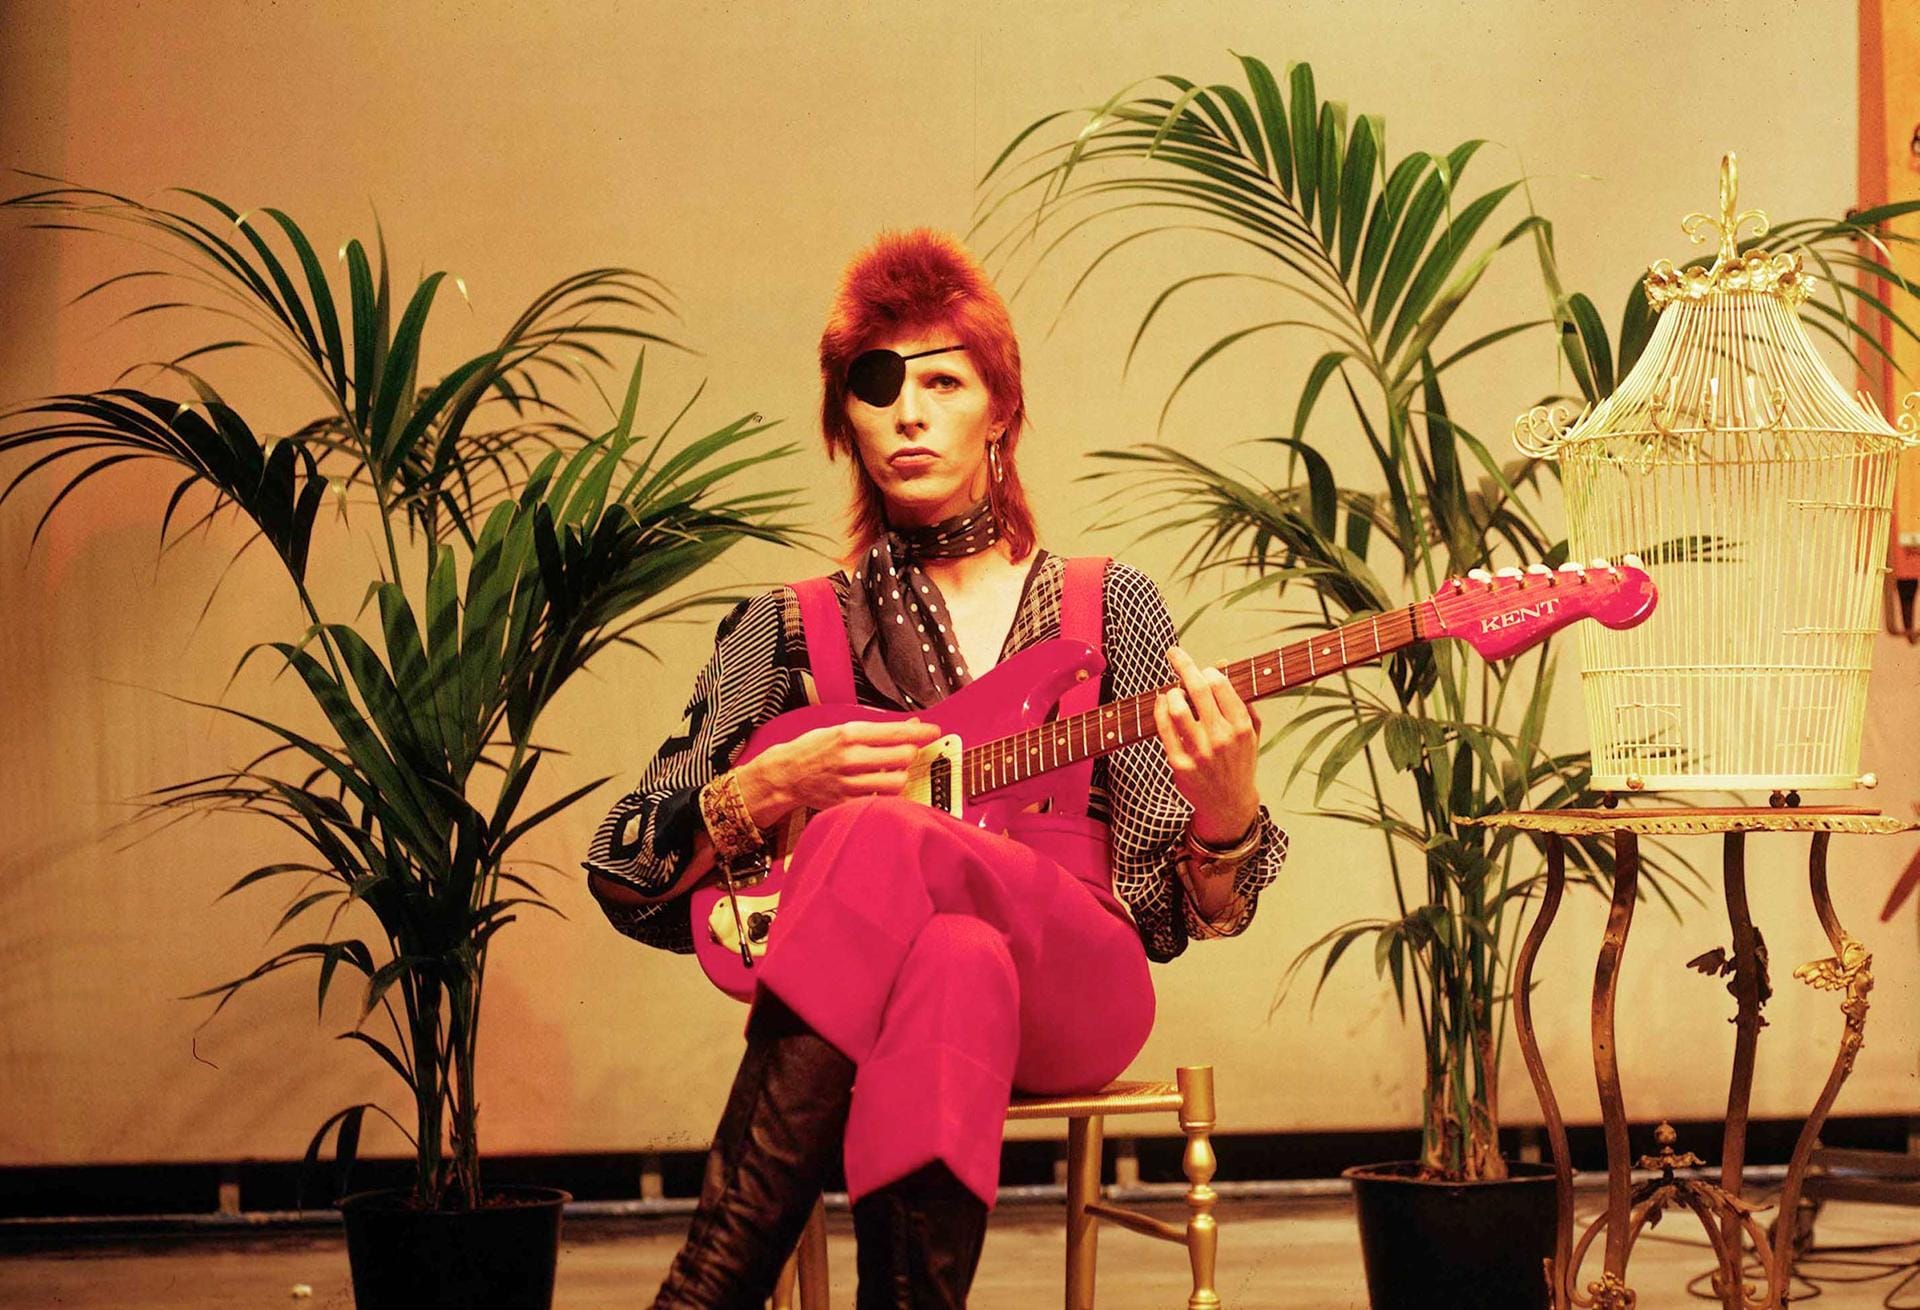 1969 erschien sein zweites Album, auf dem auch die Single "Space Oddity" enthalten war - Bowies erster kommerzieller Erfolg. Den Durchbruch schaffte er allerdings erst drei Jahre später mit dem Album "The Rise And Fall Of Ziggy Stardust And The Spiders From Mars".